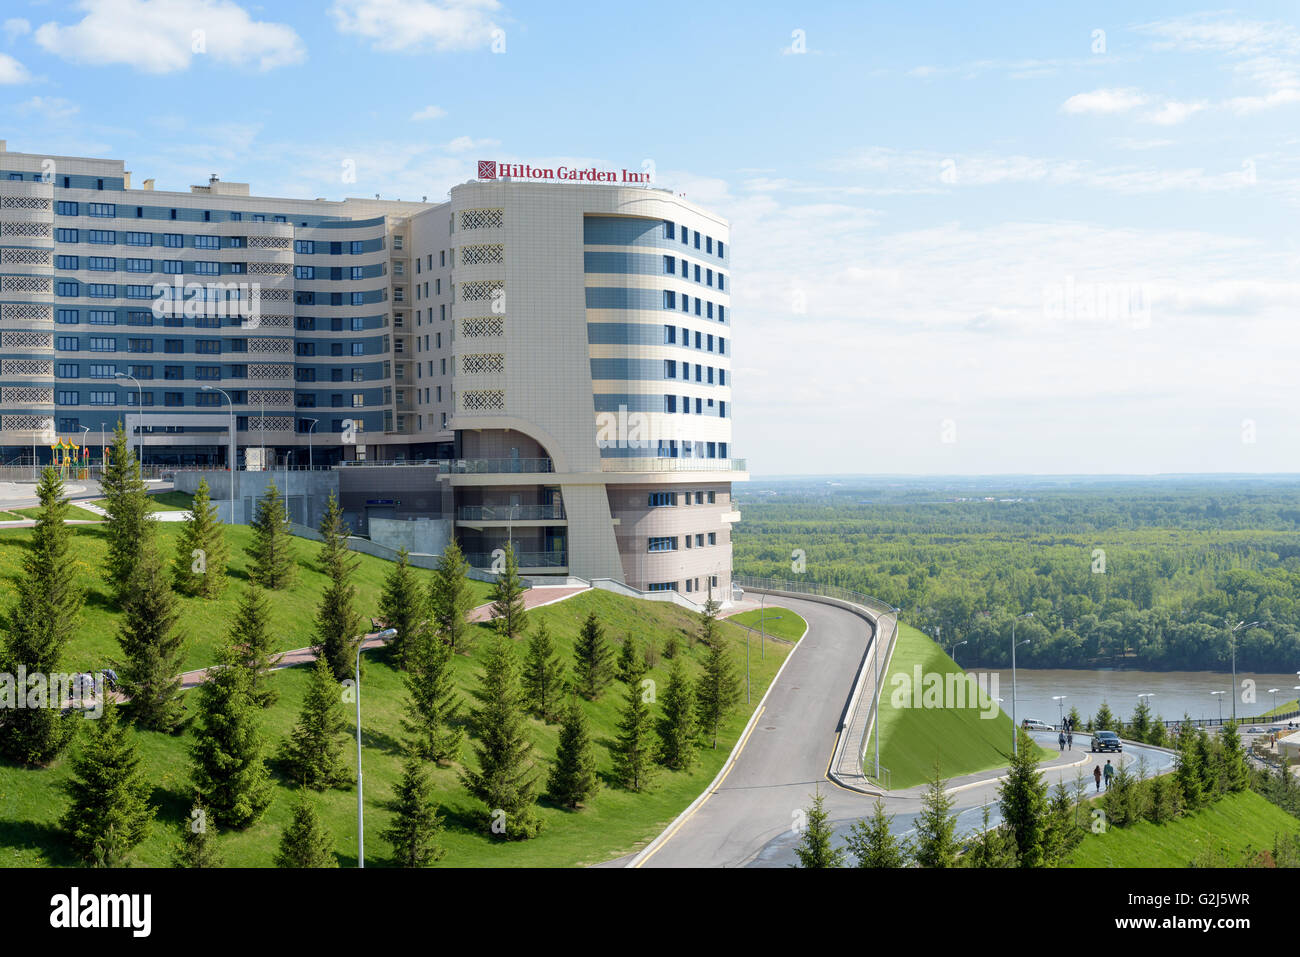 La famosa catena alberghiera Hilton Garden Inn, a Ufa, Repubblica del Bashkortostan, Federazione russa Foto Stock